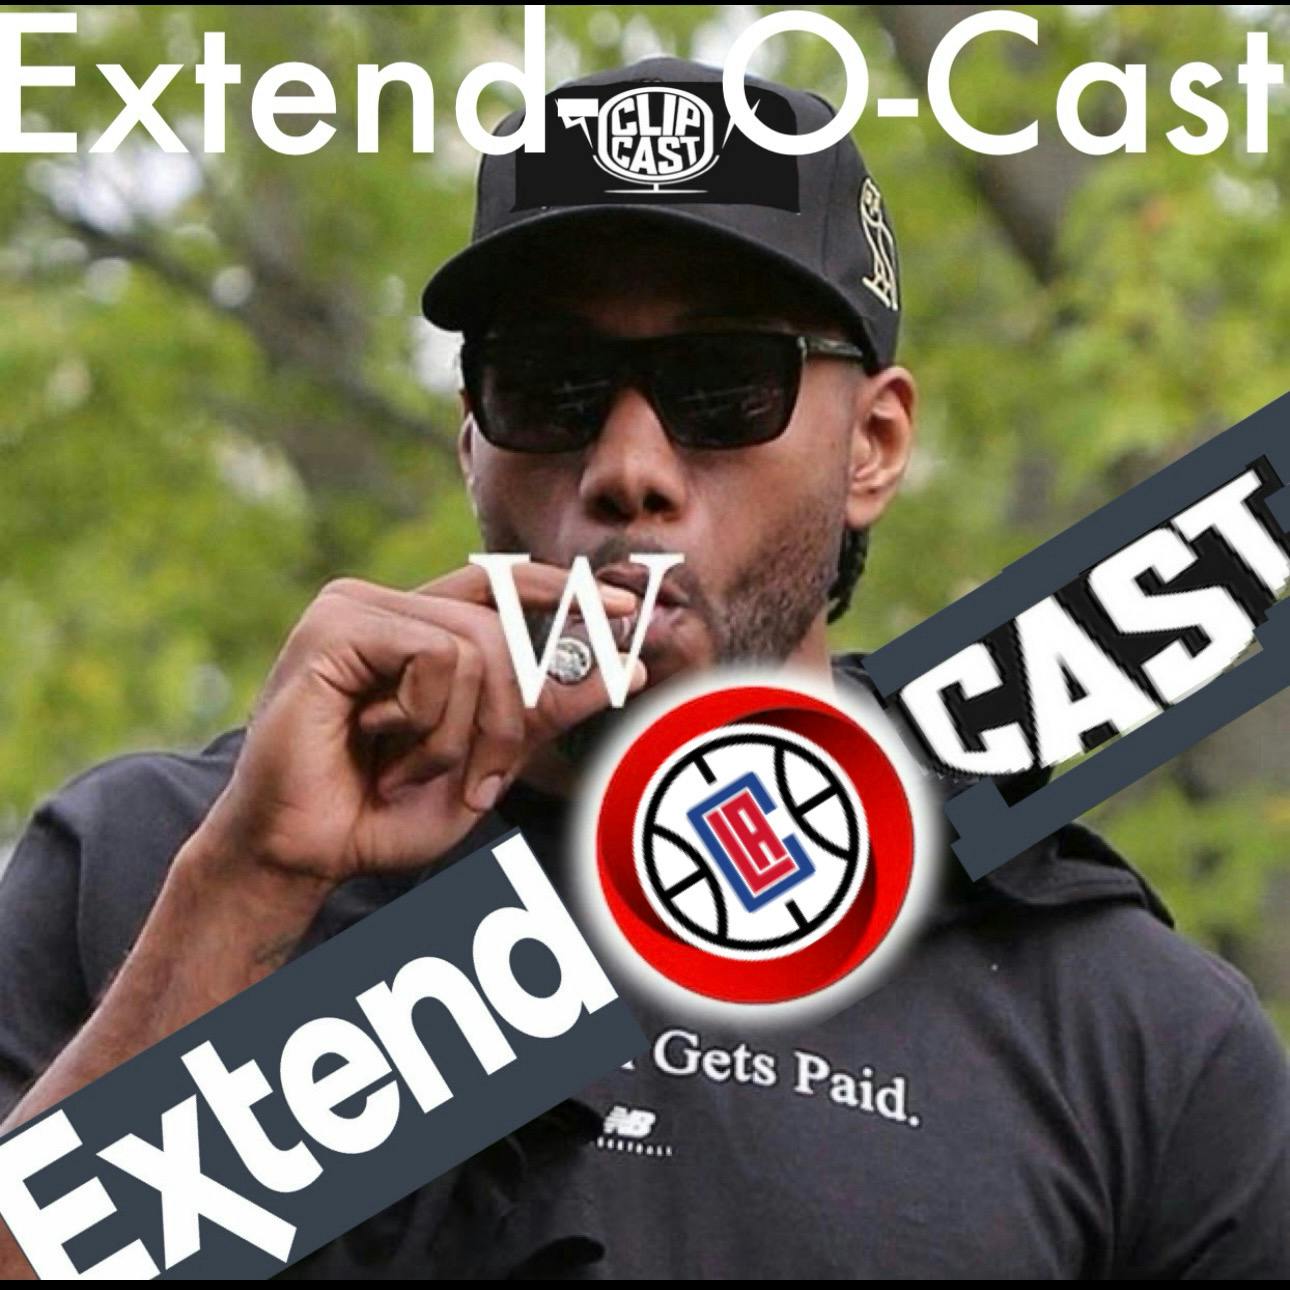 Extend-O-Cast